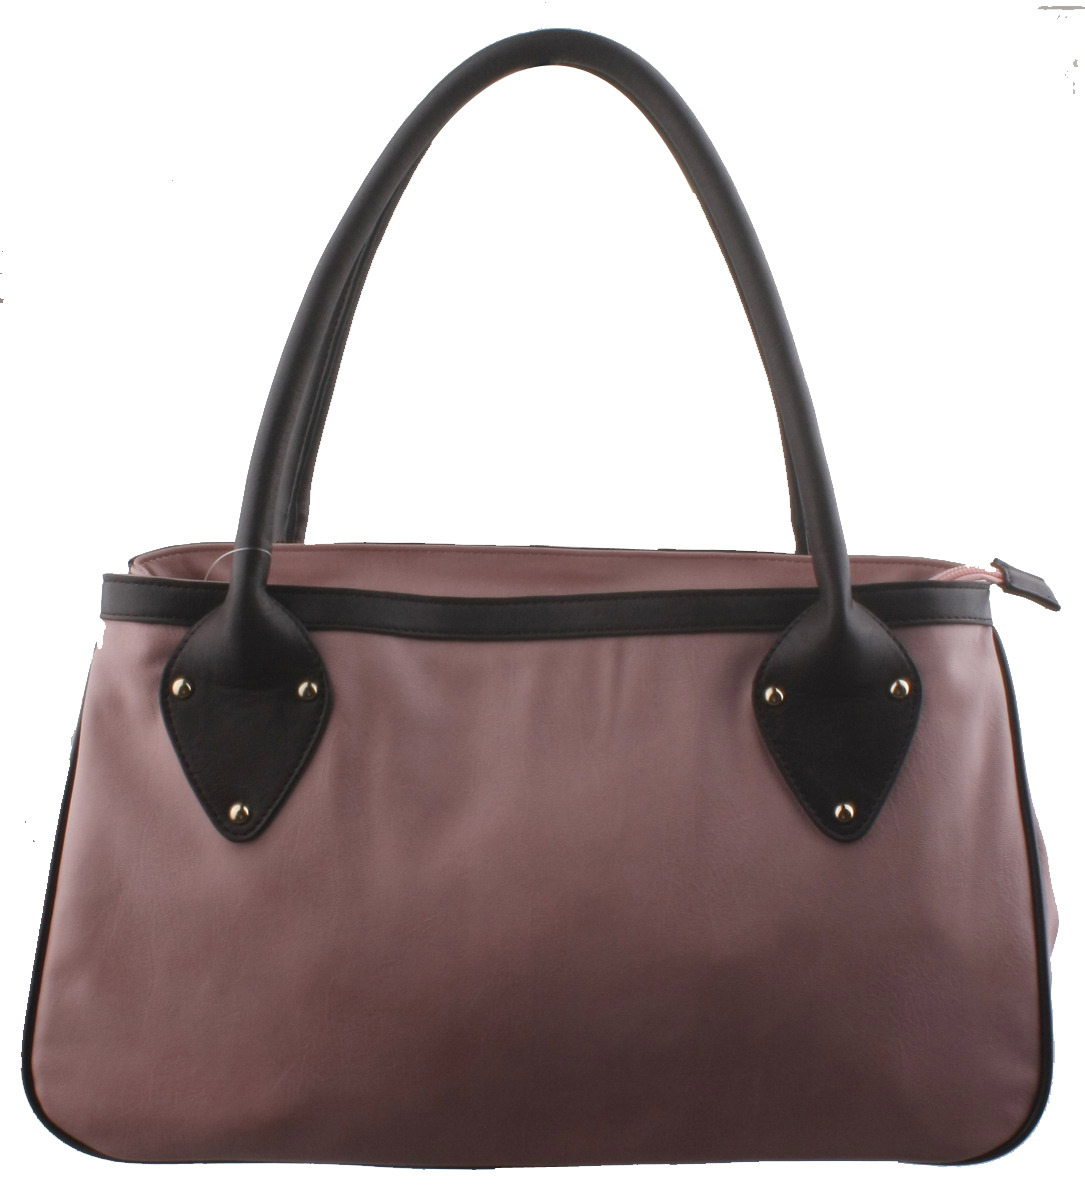 Fashion Ladies' Handbag (QL005-01)